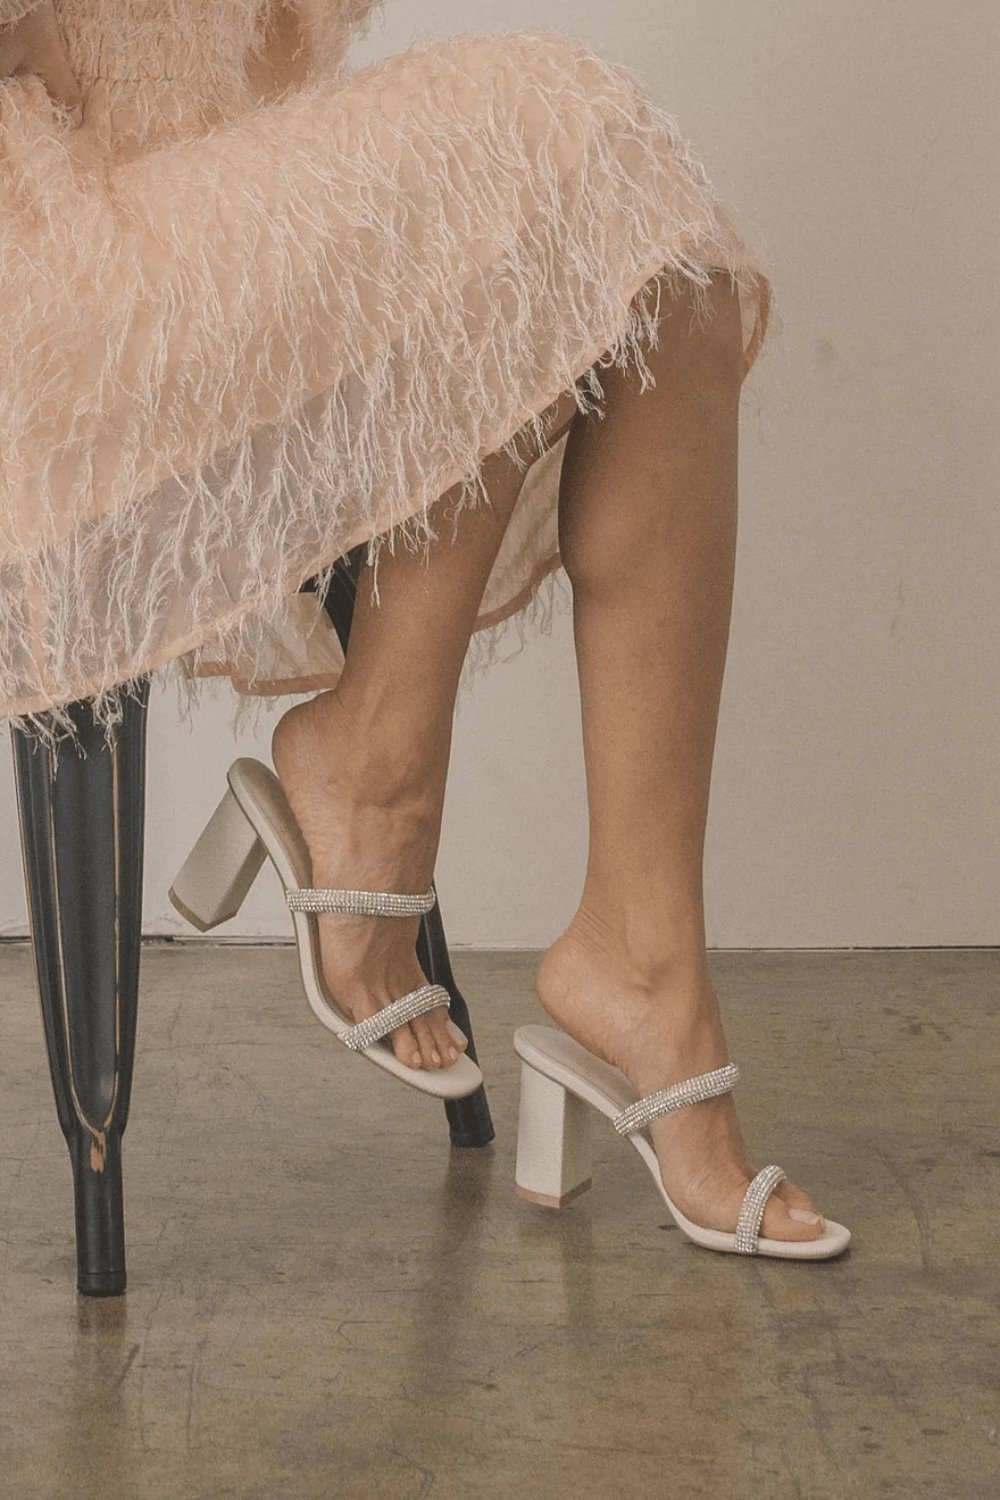 Be Mine Aditi embellished heeled shoes in ivory satin - ShopStyle Heels